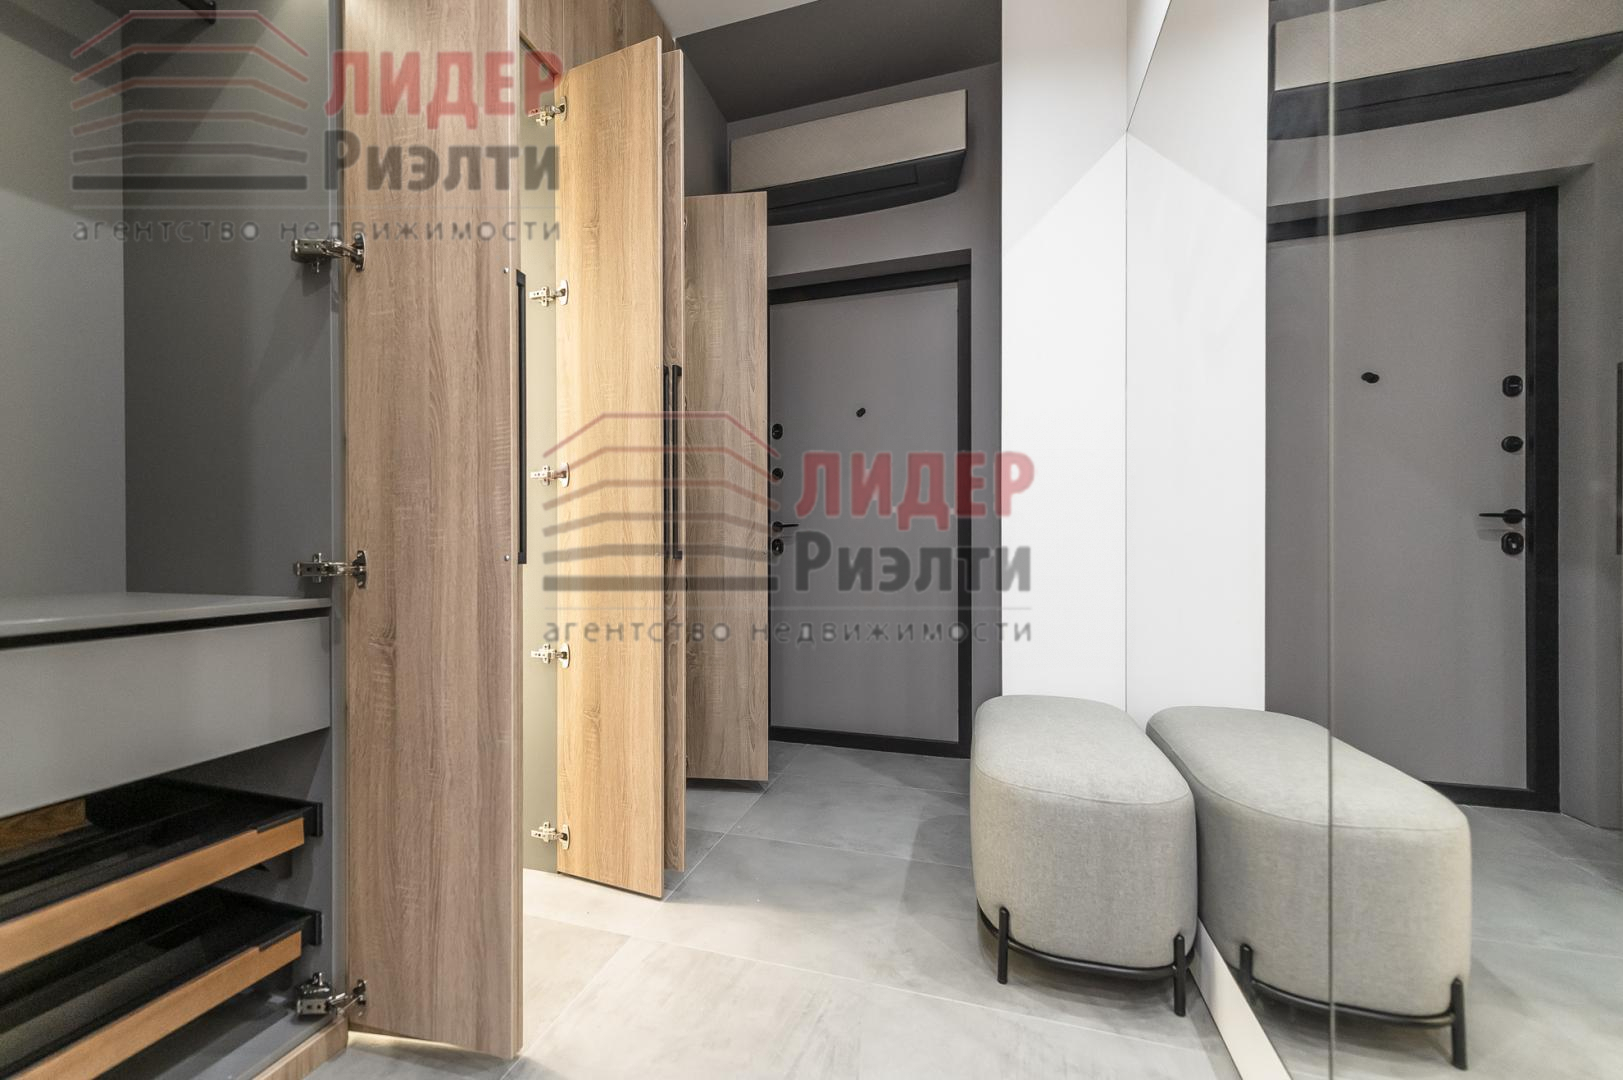 Продам квартиру в Москве по адресу Береговой проезд, 5к2, площадь 45 квм Недвижимость Москва (Россия)  В студии имеется все необходимое для проживания